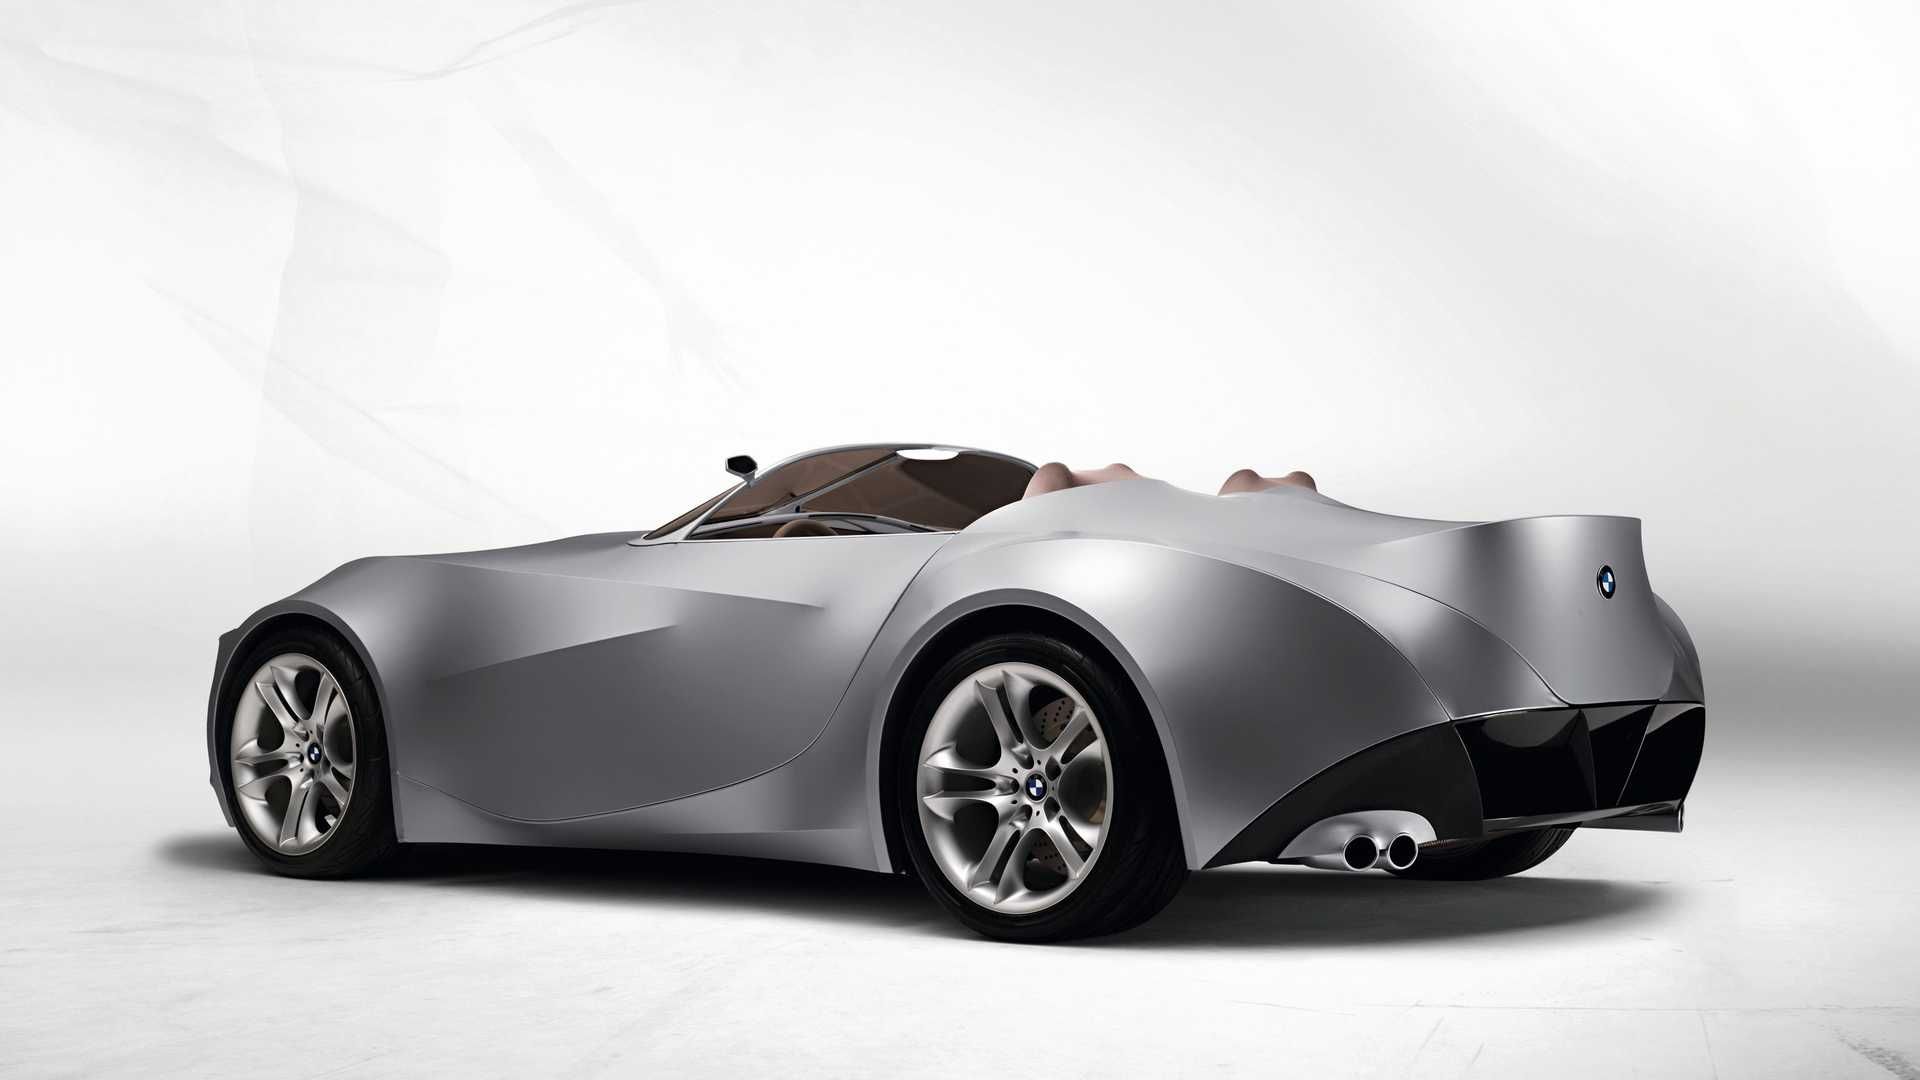 مرجع متخصصين ايران نماي سه چهارم عقب خودروي مفهومي روباز بي ام و گينا / BMW GINA concept convertible با بدنه پارچه اي 